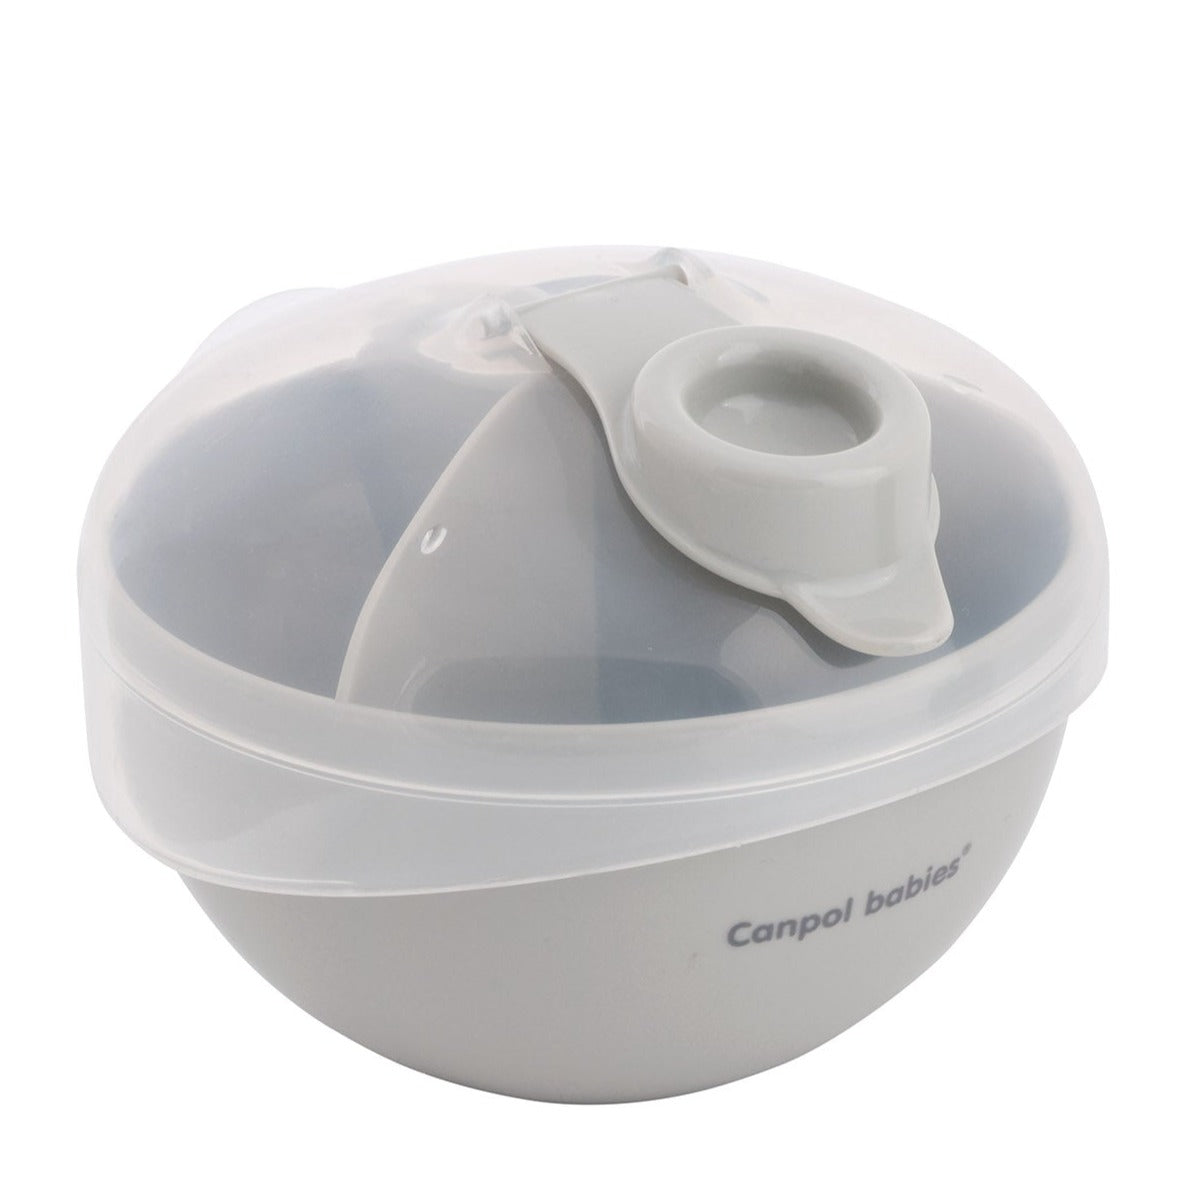 Canpol Babies: Dispensateur de lait de lait gris Récipient de lait en poudre